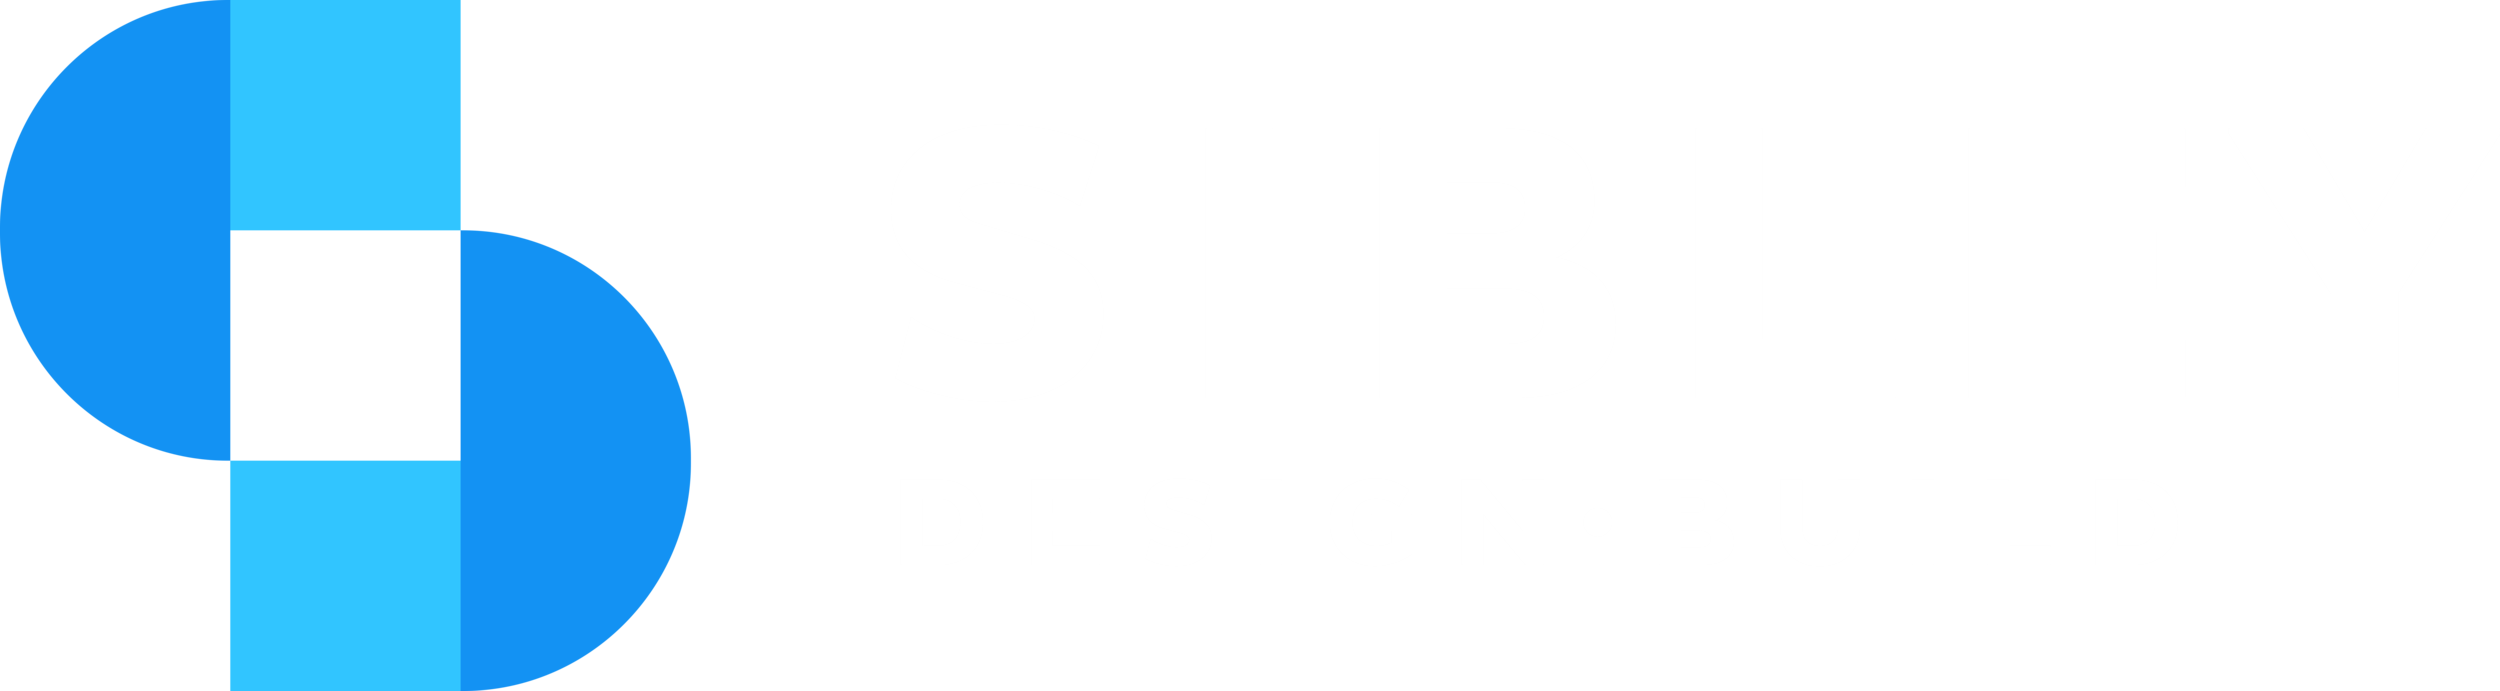 Sibley Design Build